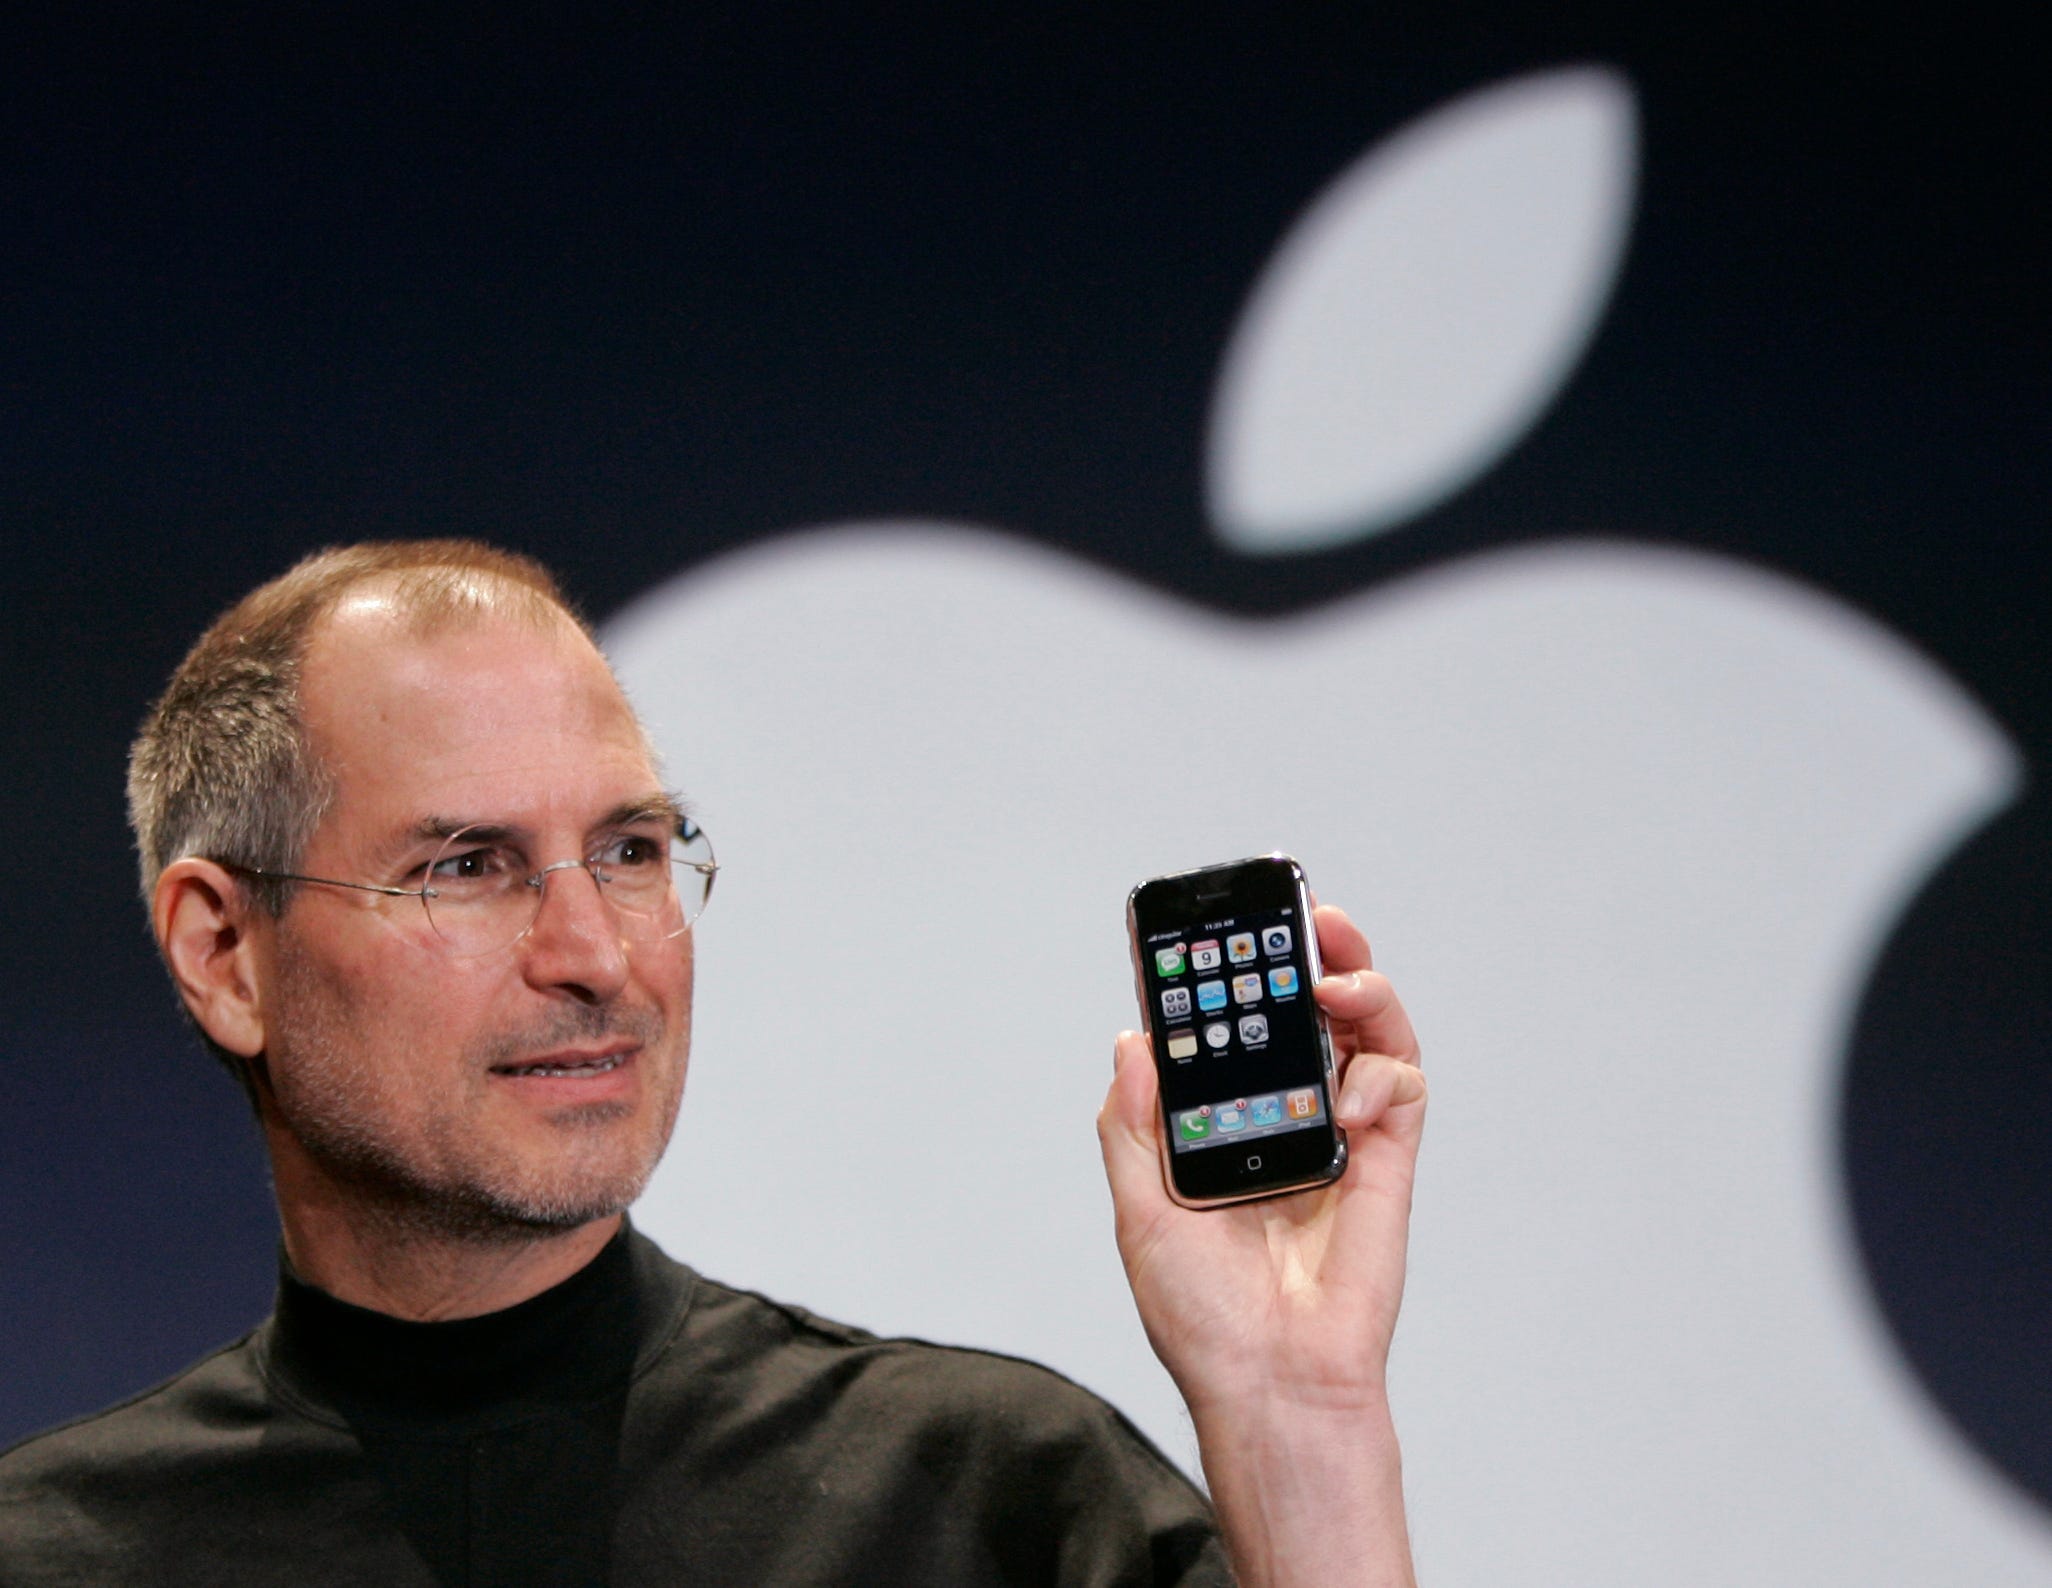 Der frühere Apple-Chef Steve Jobs präsentiert auf der Bühne einer Apple-Veranstaltung das erste iPhone, im Hintergrund taucht das Apple-Logo auf.